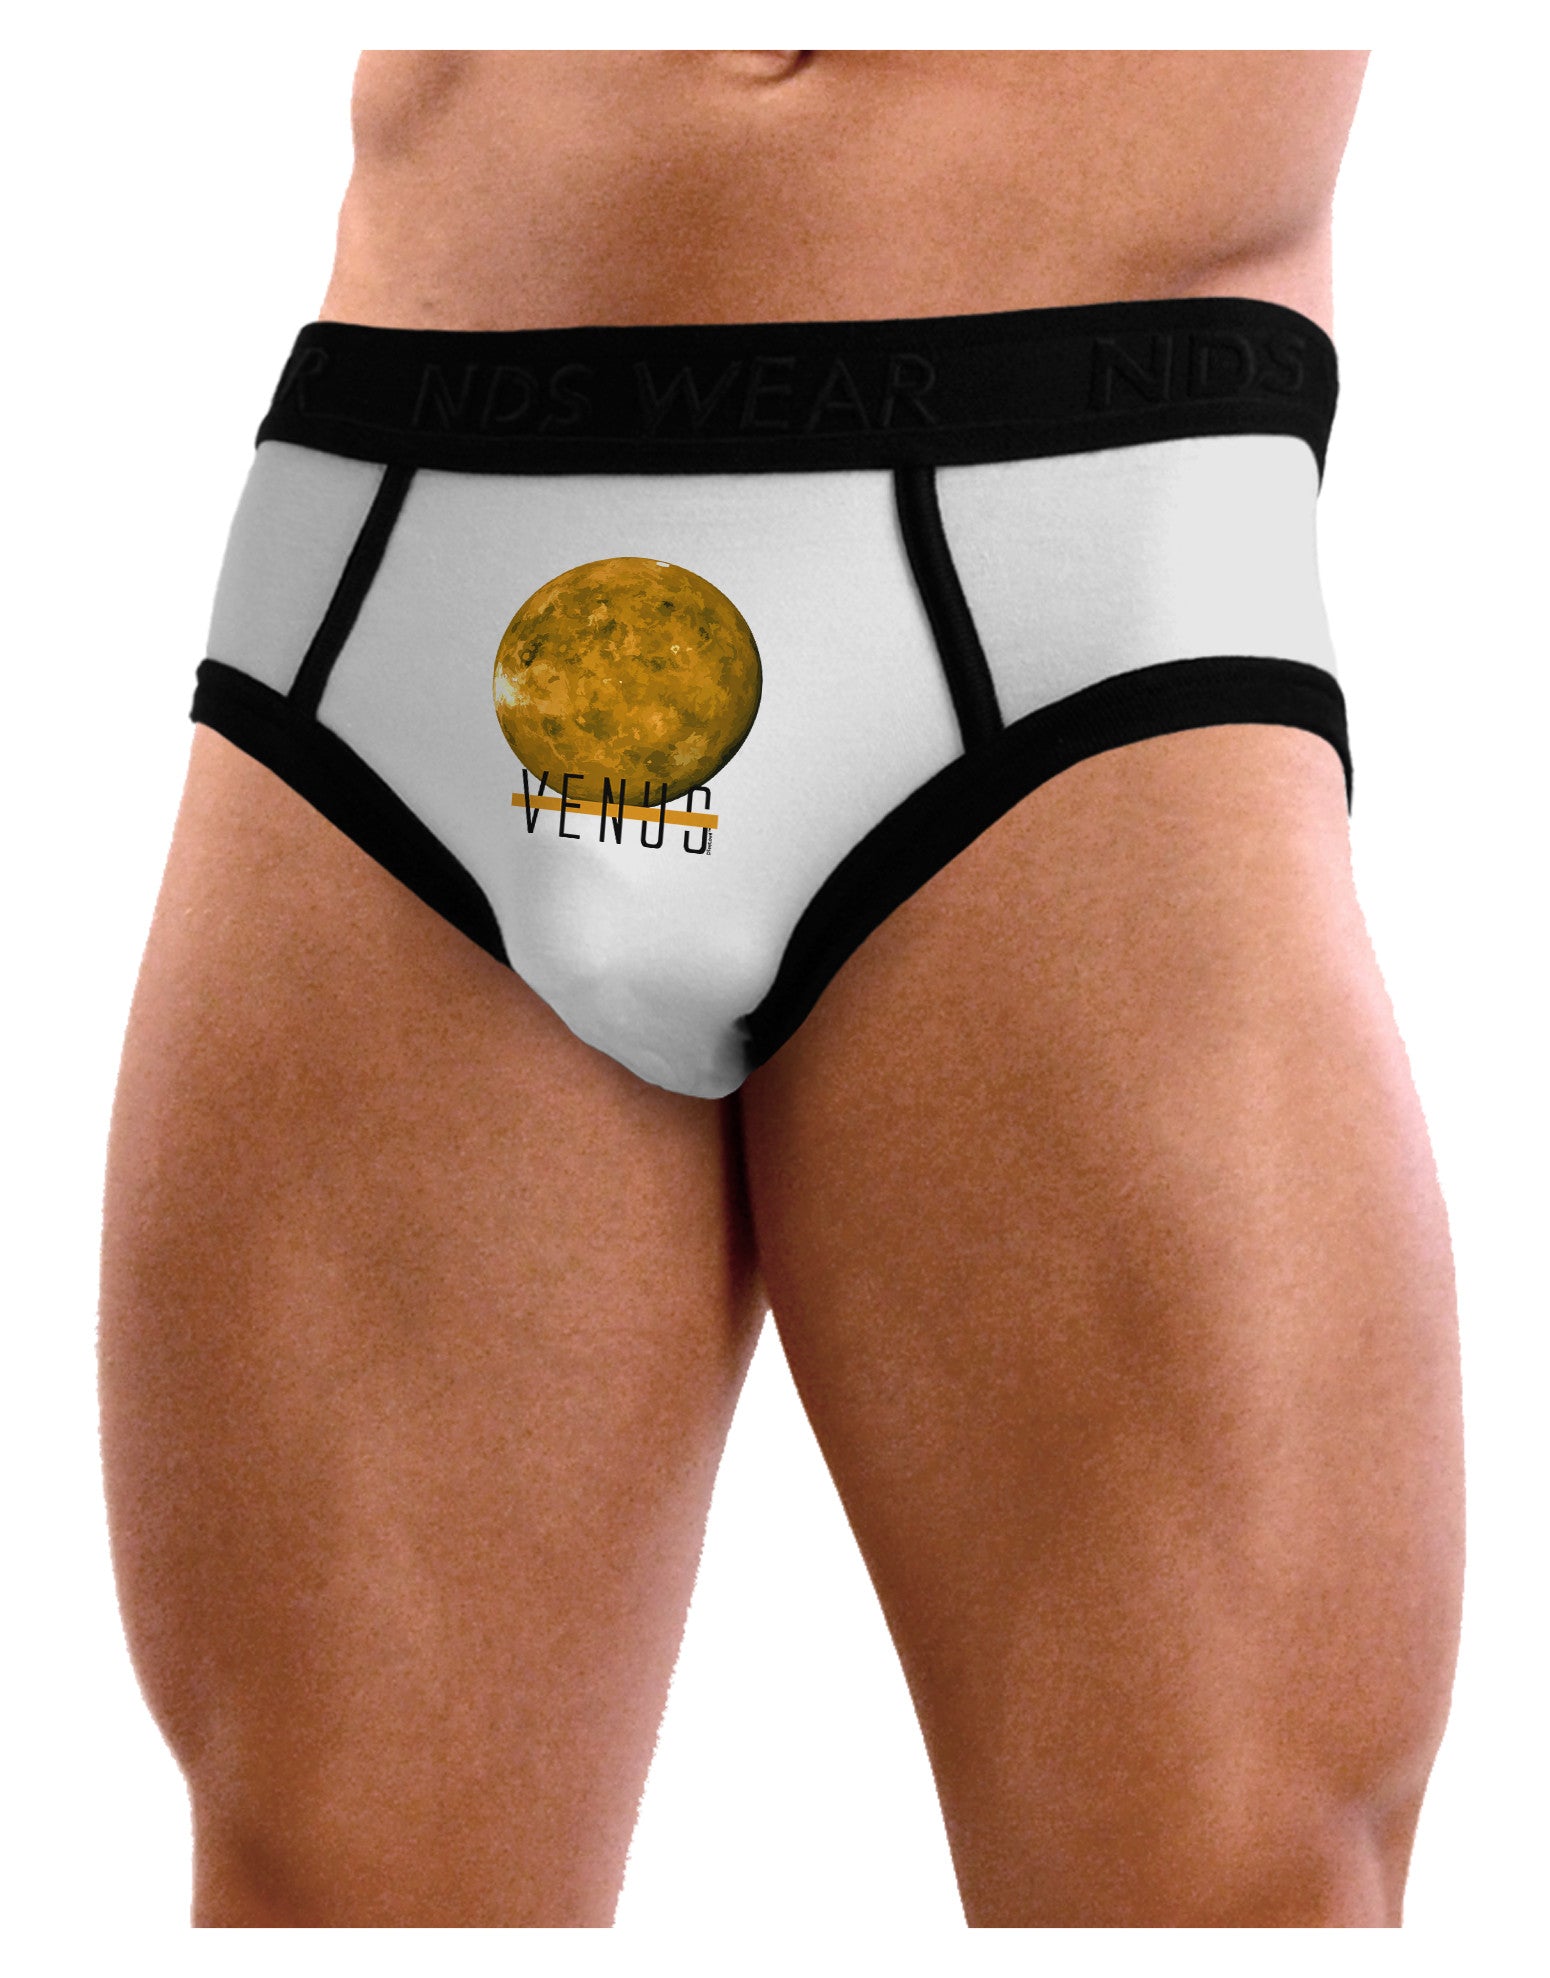 Planet Venus Text Mens NDS Wear Briefs Underwear